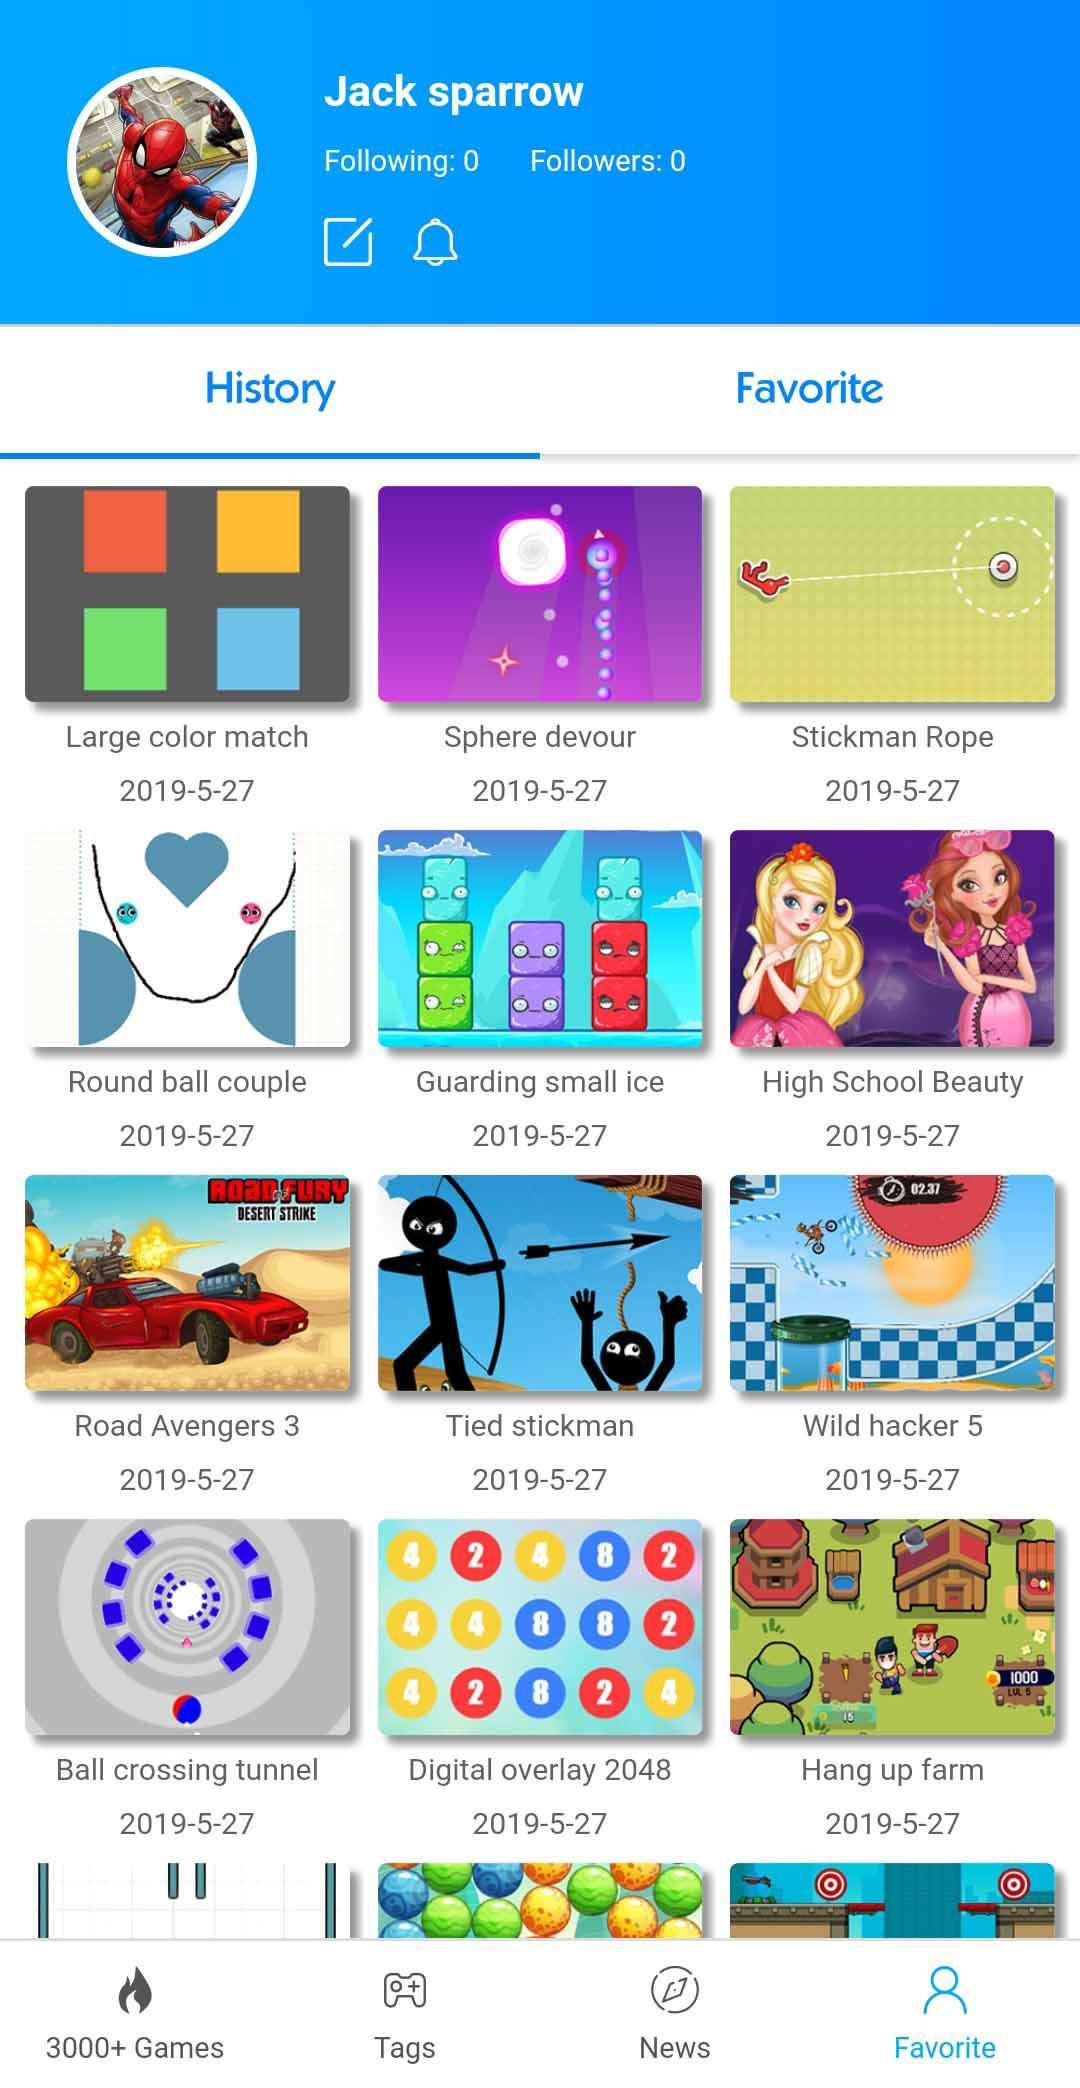 Fun GameBox 3000+ games in App 2.0.5 Screenshot 2